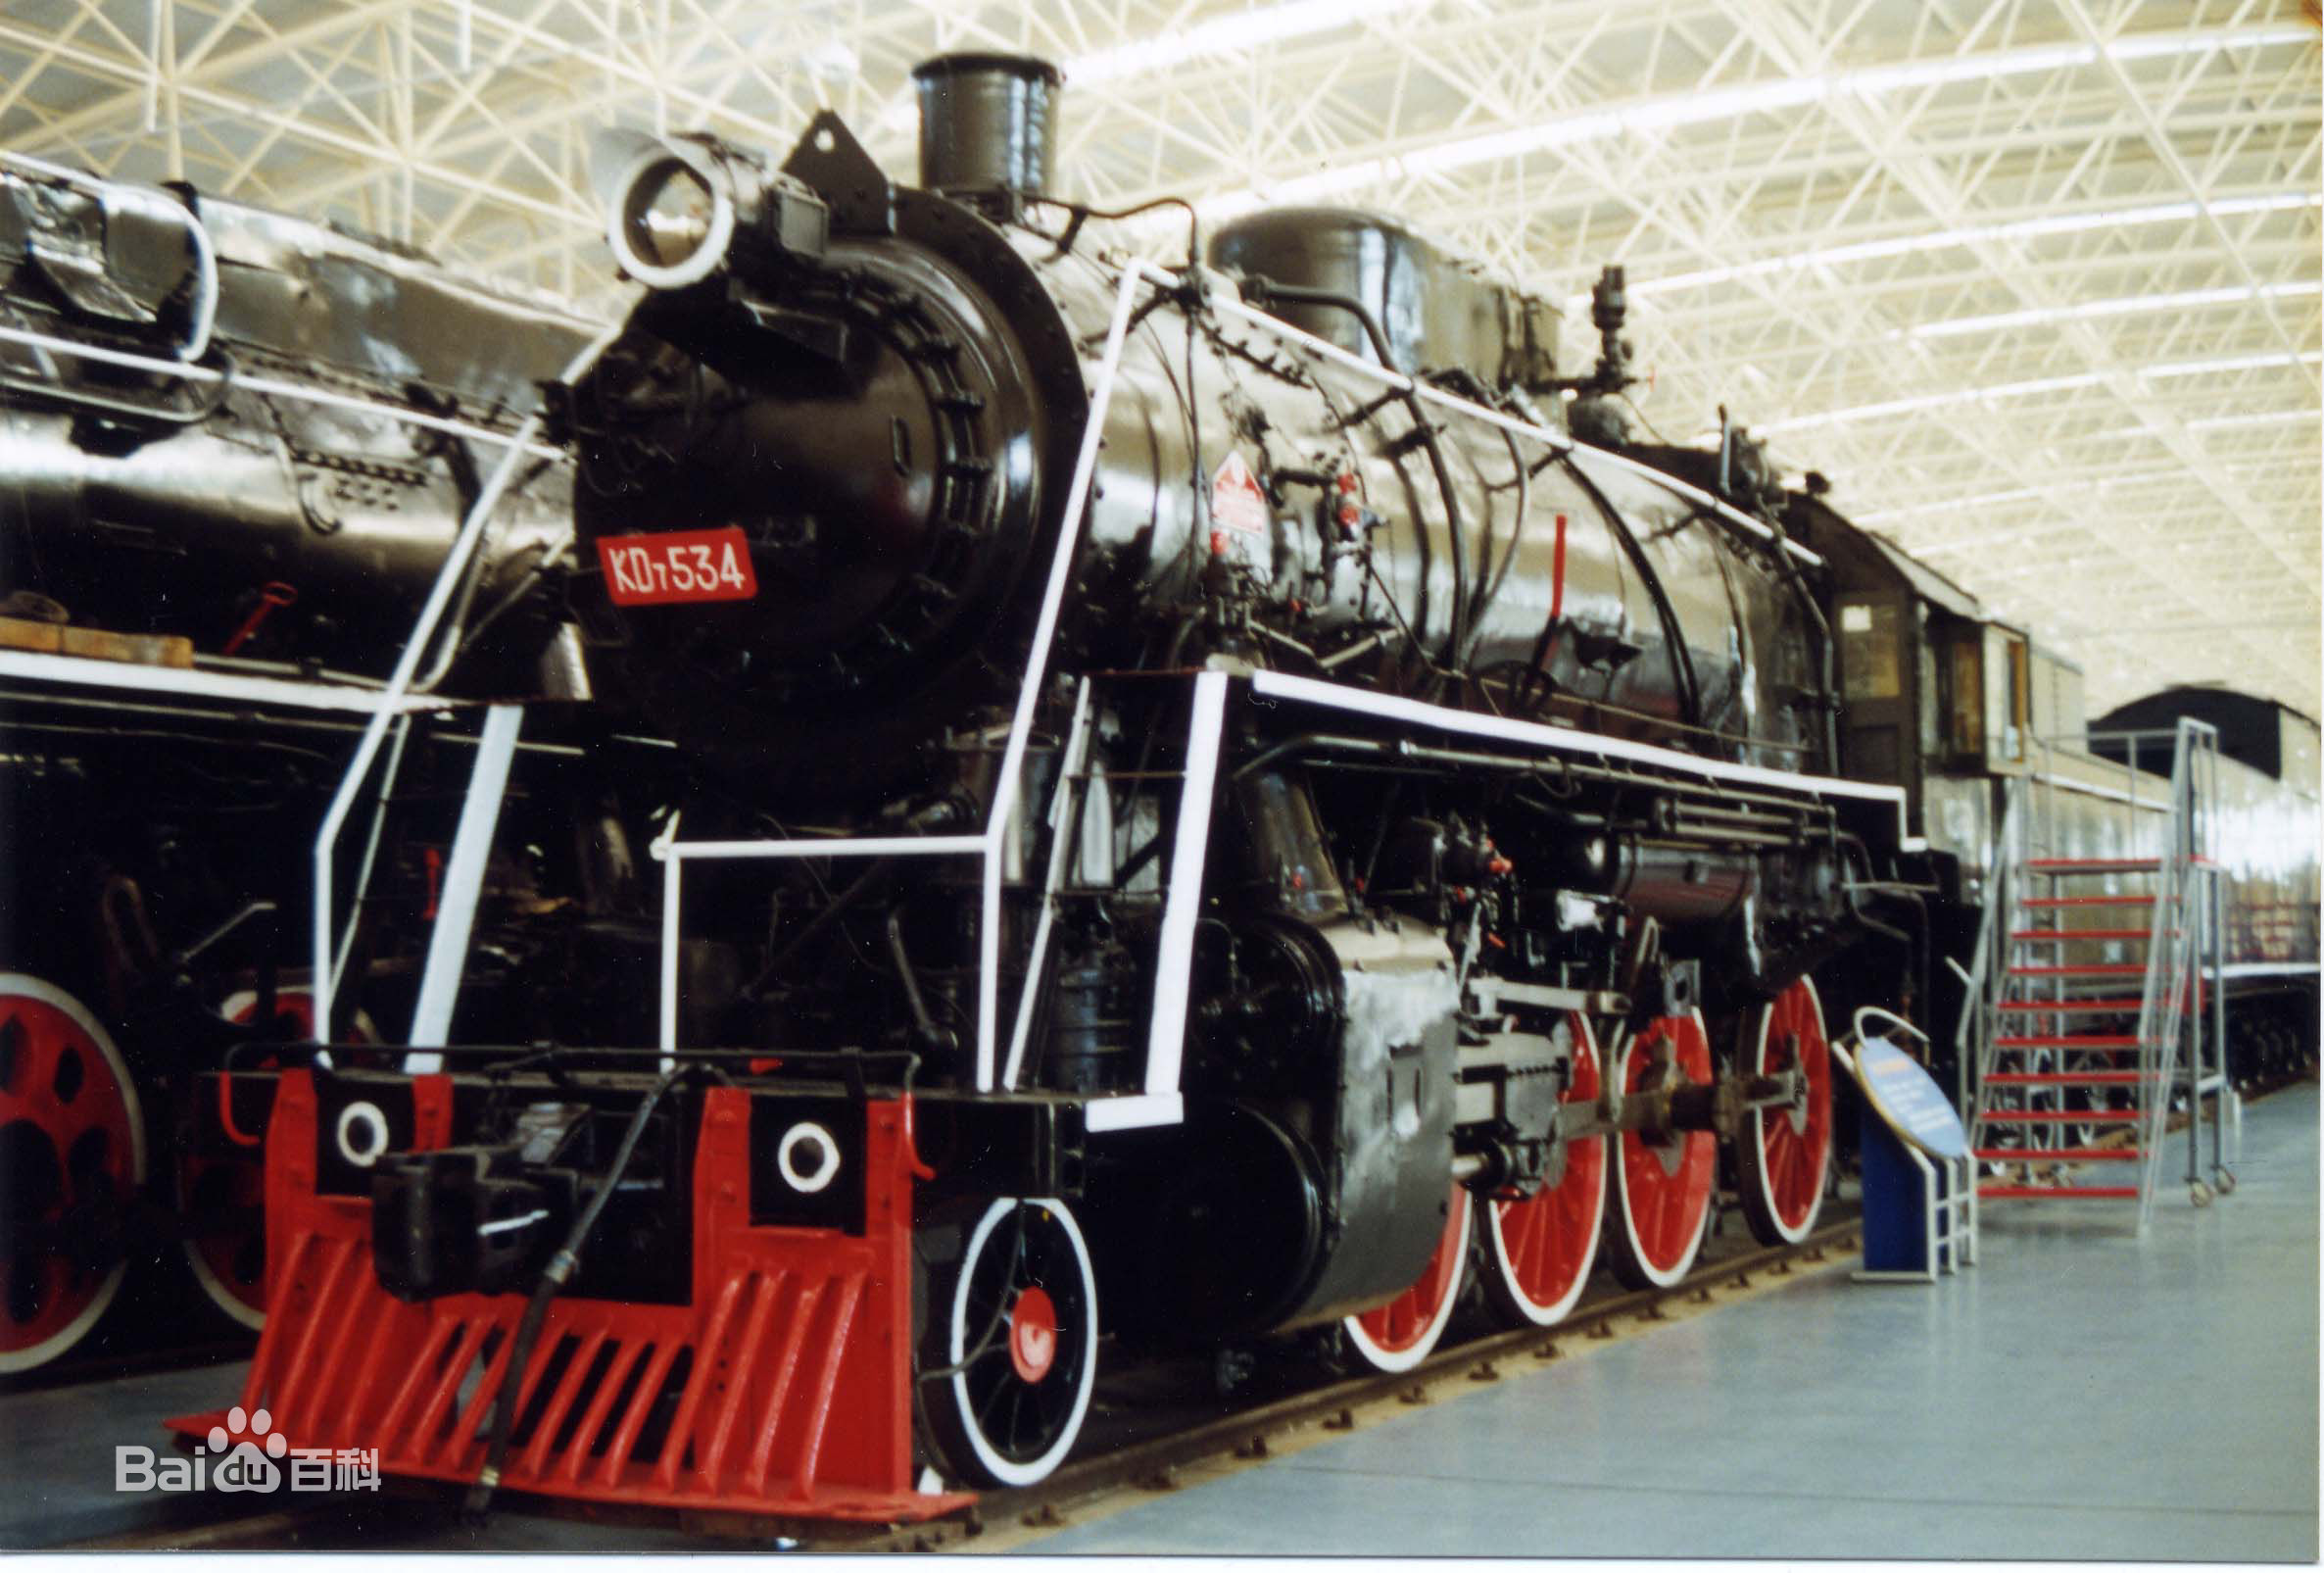 55吨 全长:20,370mm kd型蒸汽机车被定为国家二级文物 中国铁道博物馆